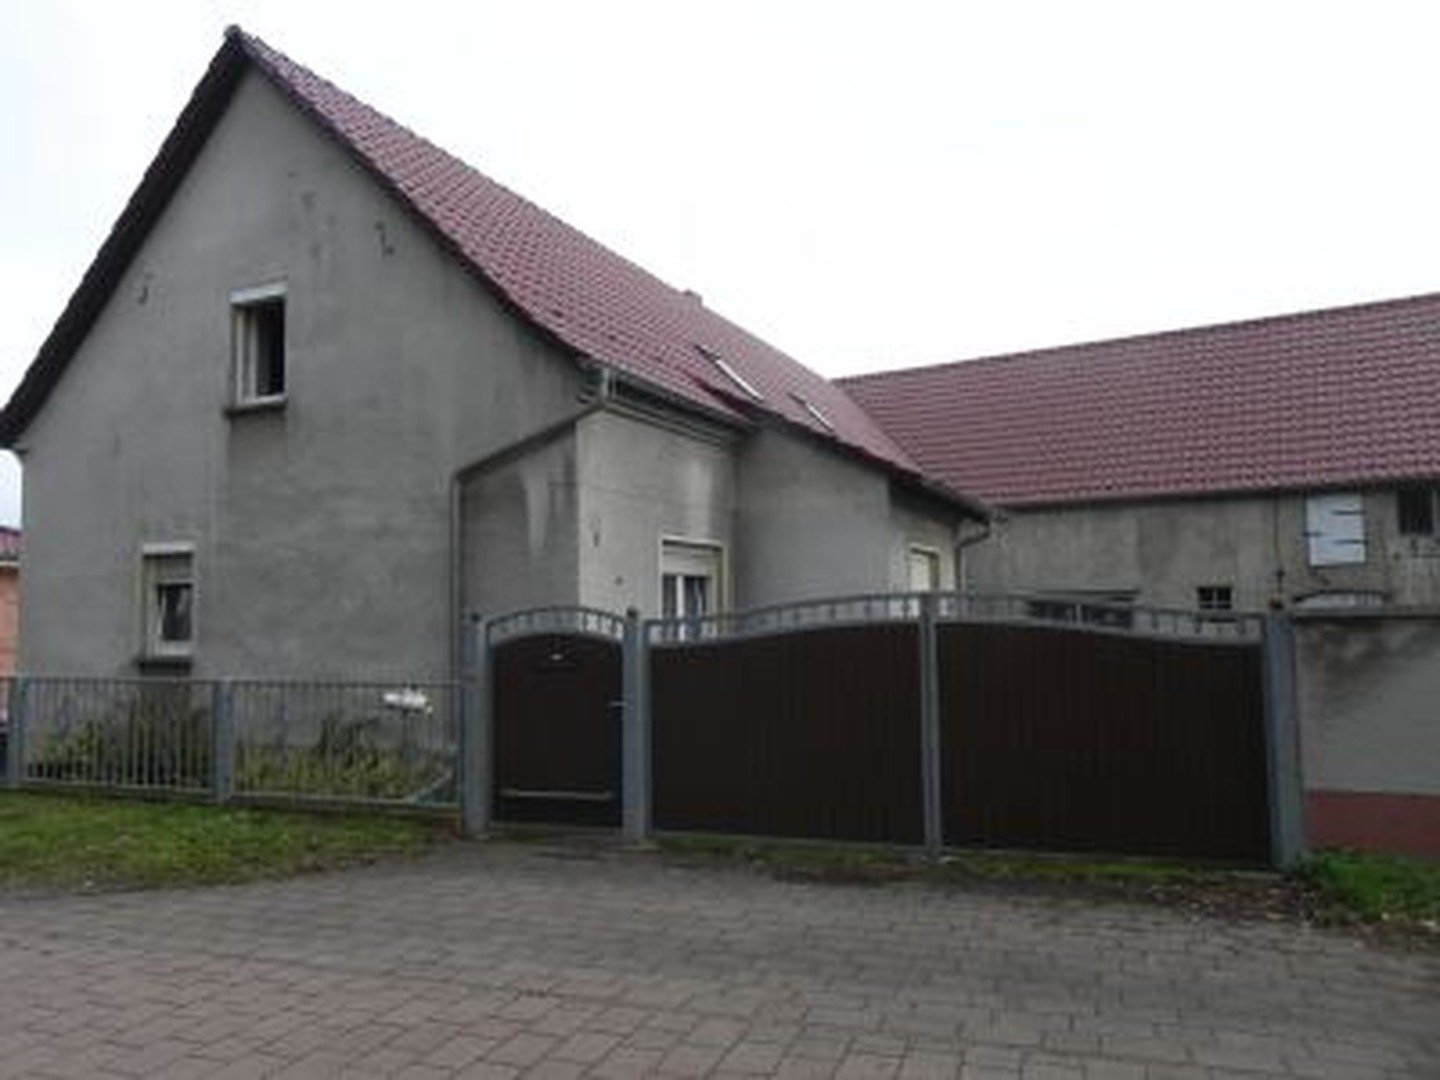 Grundstück mit Einfamilienhaus in der Stadt Jessen/ OT Düßnitz OHNE MAKLER - DIREKT VOM EIGENTÜMER!